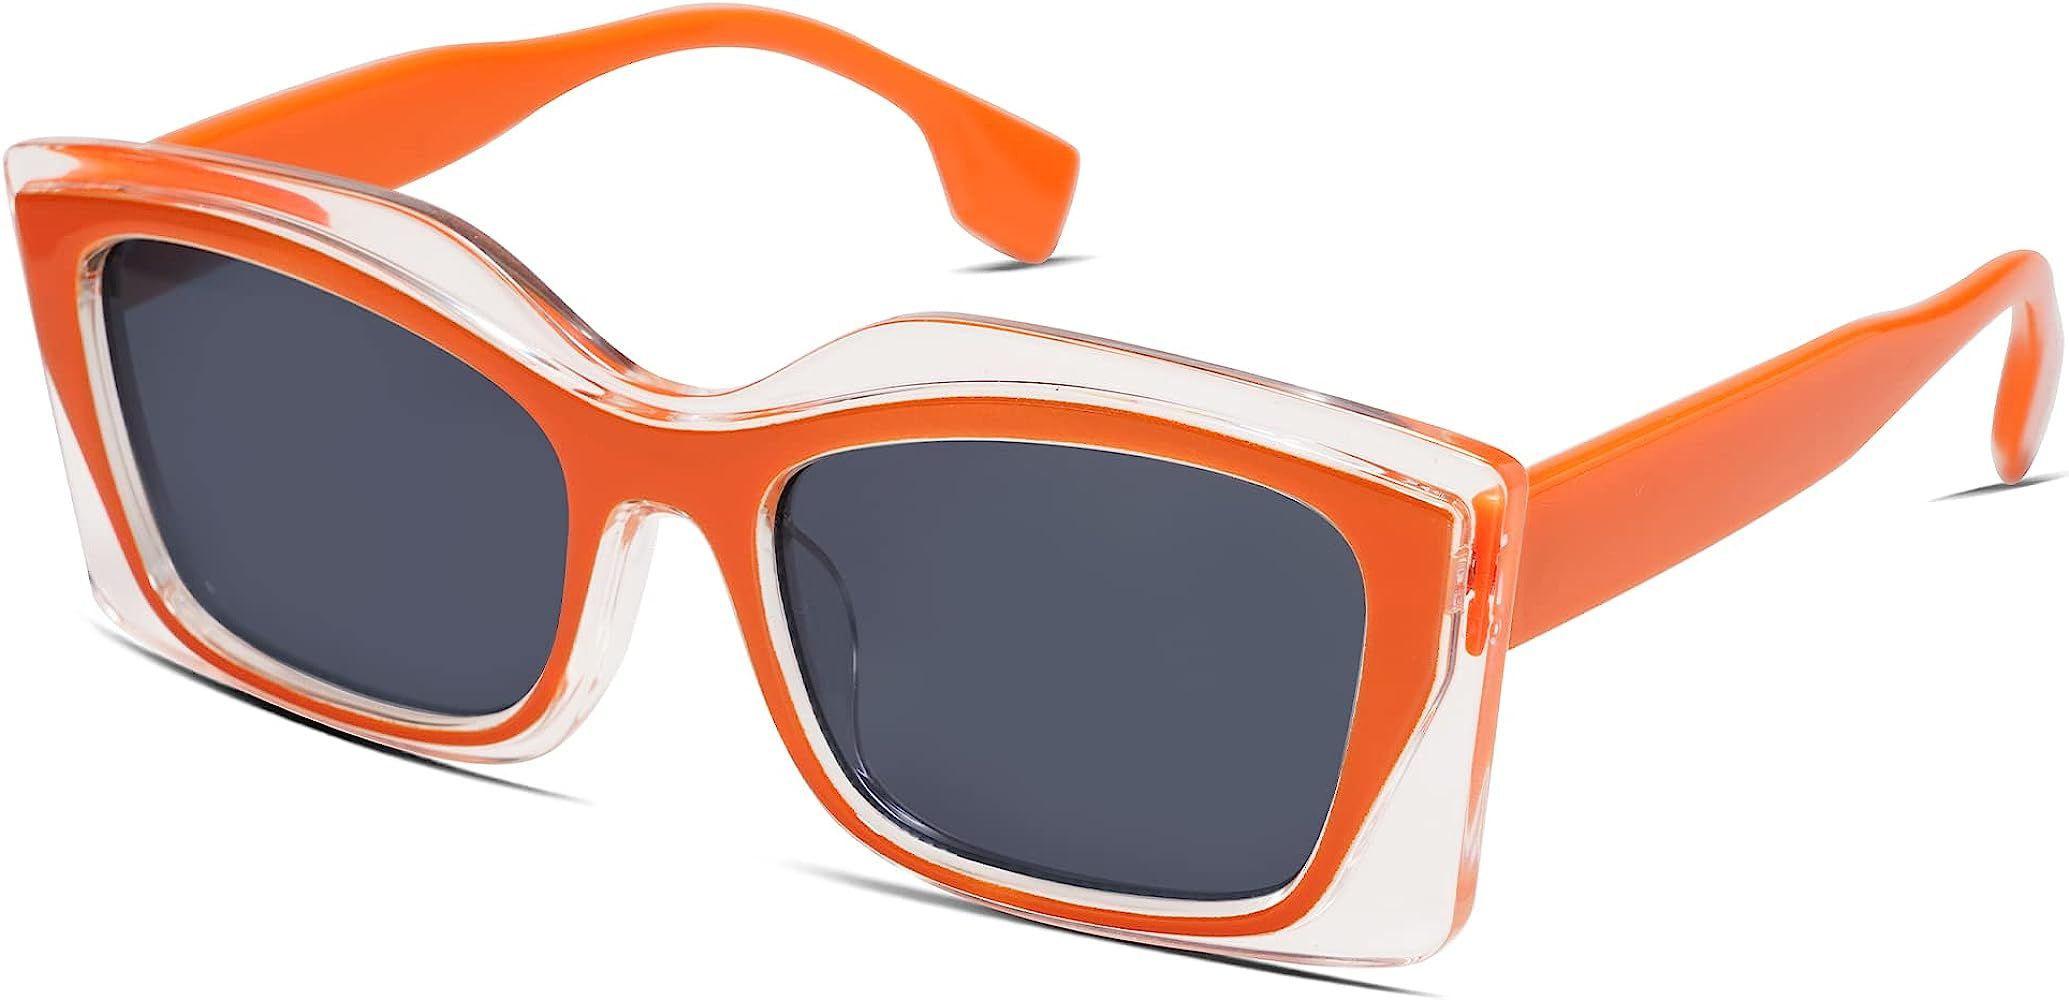 VANLINKER Retro Square Cat Eye Sunglasses for Women Men 90s Trendy Shades Oversized Vintage Glass... | Amazon (US)